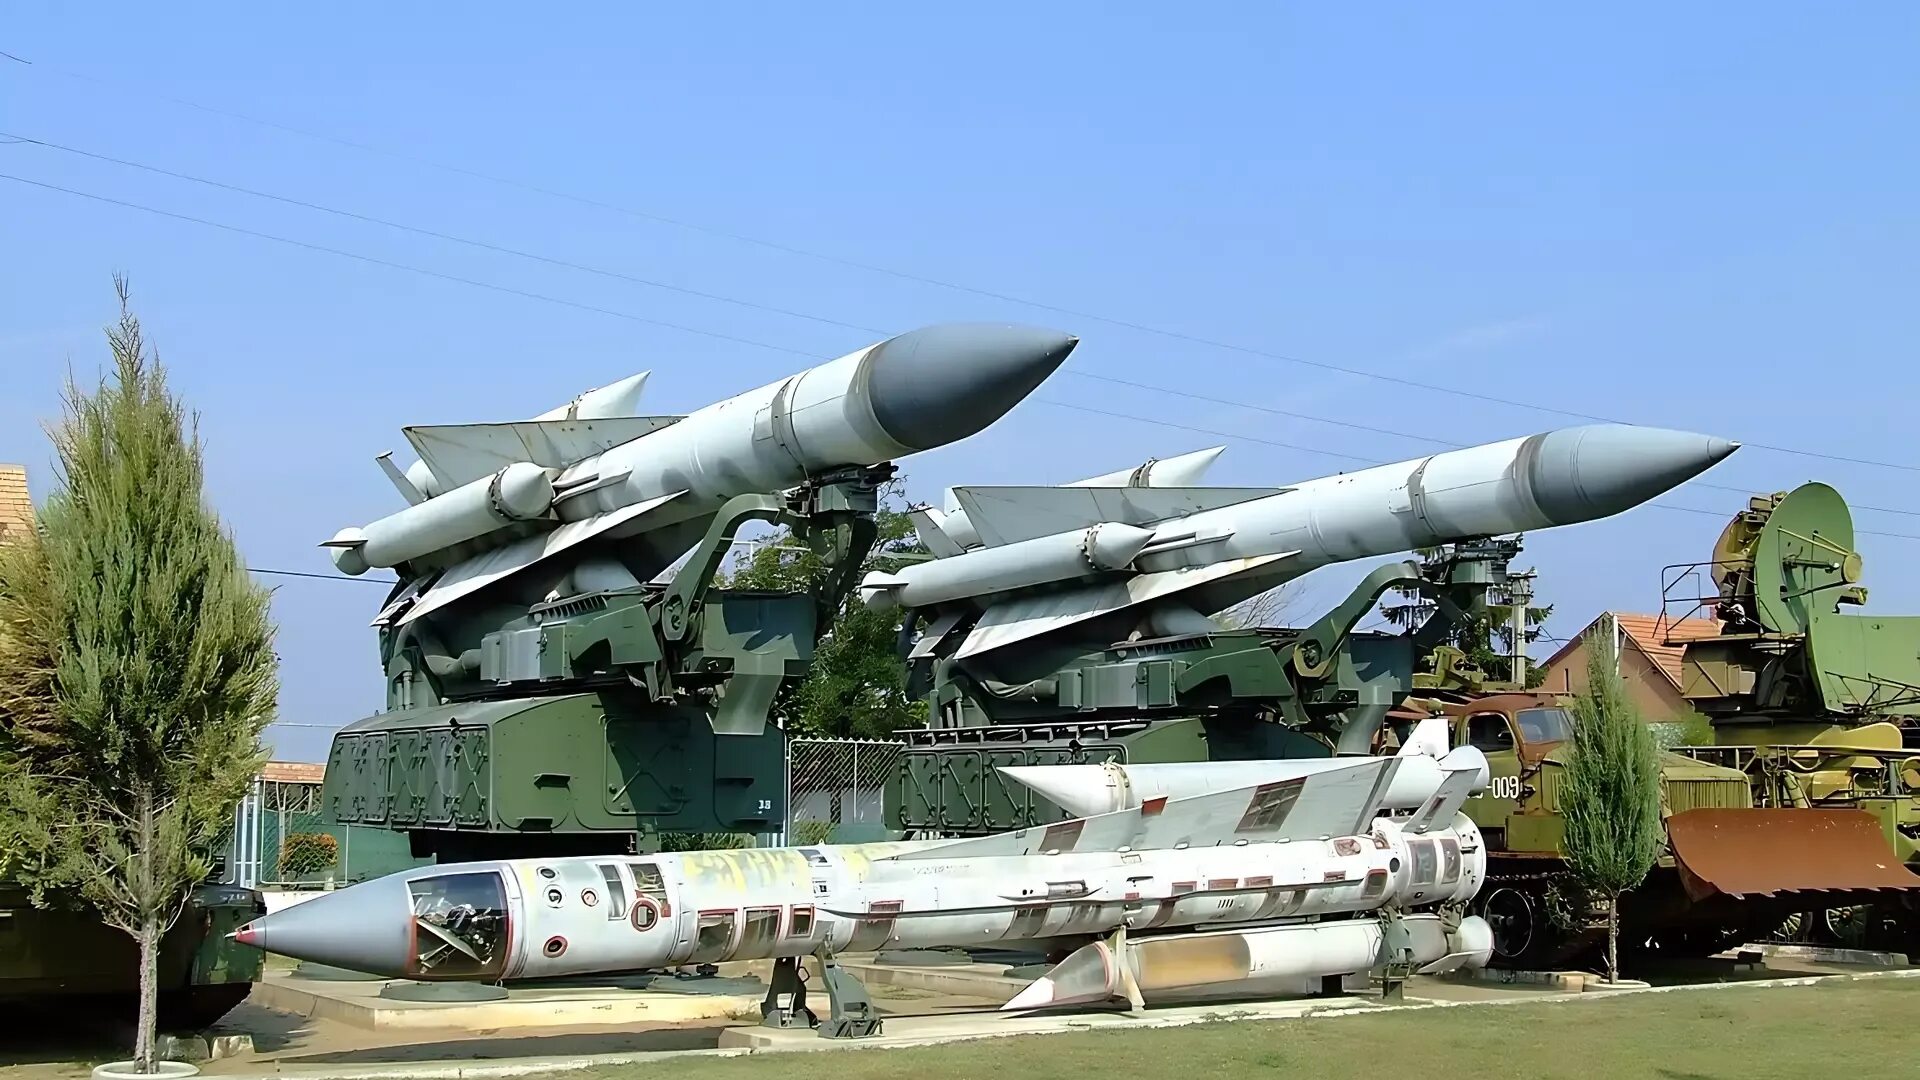 Ракета с 200 вес. С 200 Вега. С200 ракеты ПВО. С-200 ракетный комплекс. ЗРК С-200 «Ангара», «Вега», «Дубна».